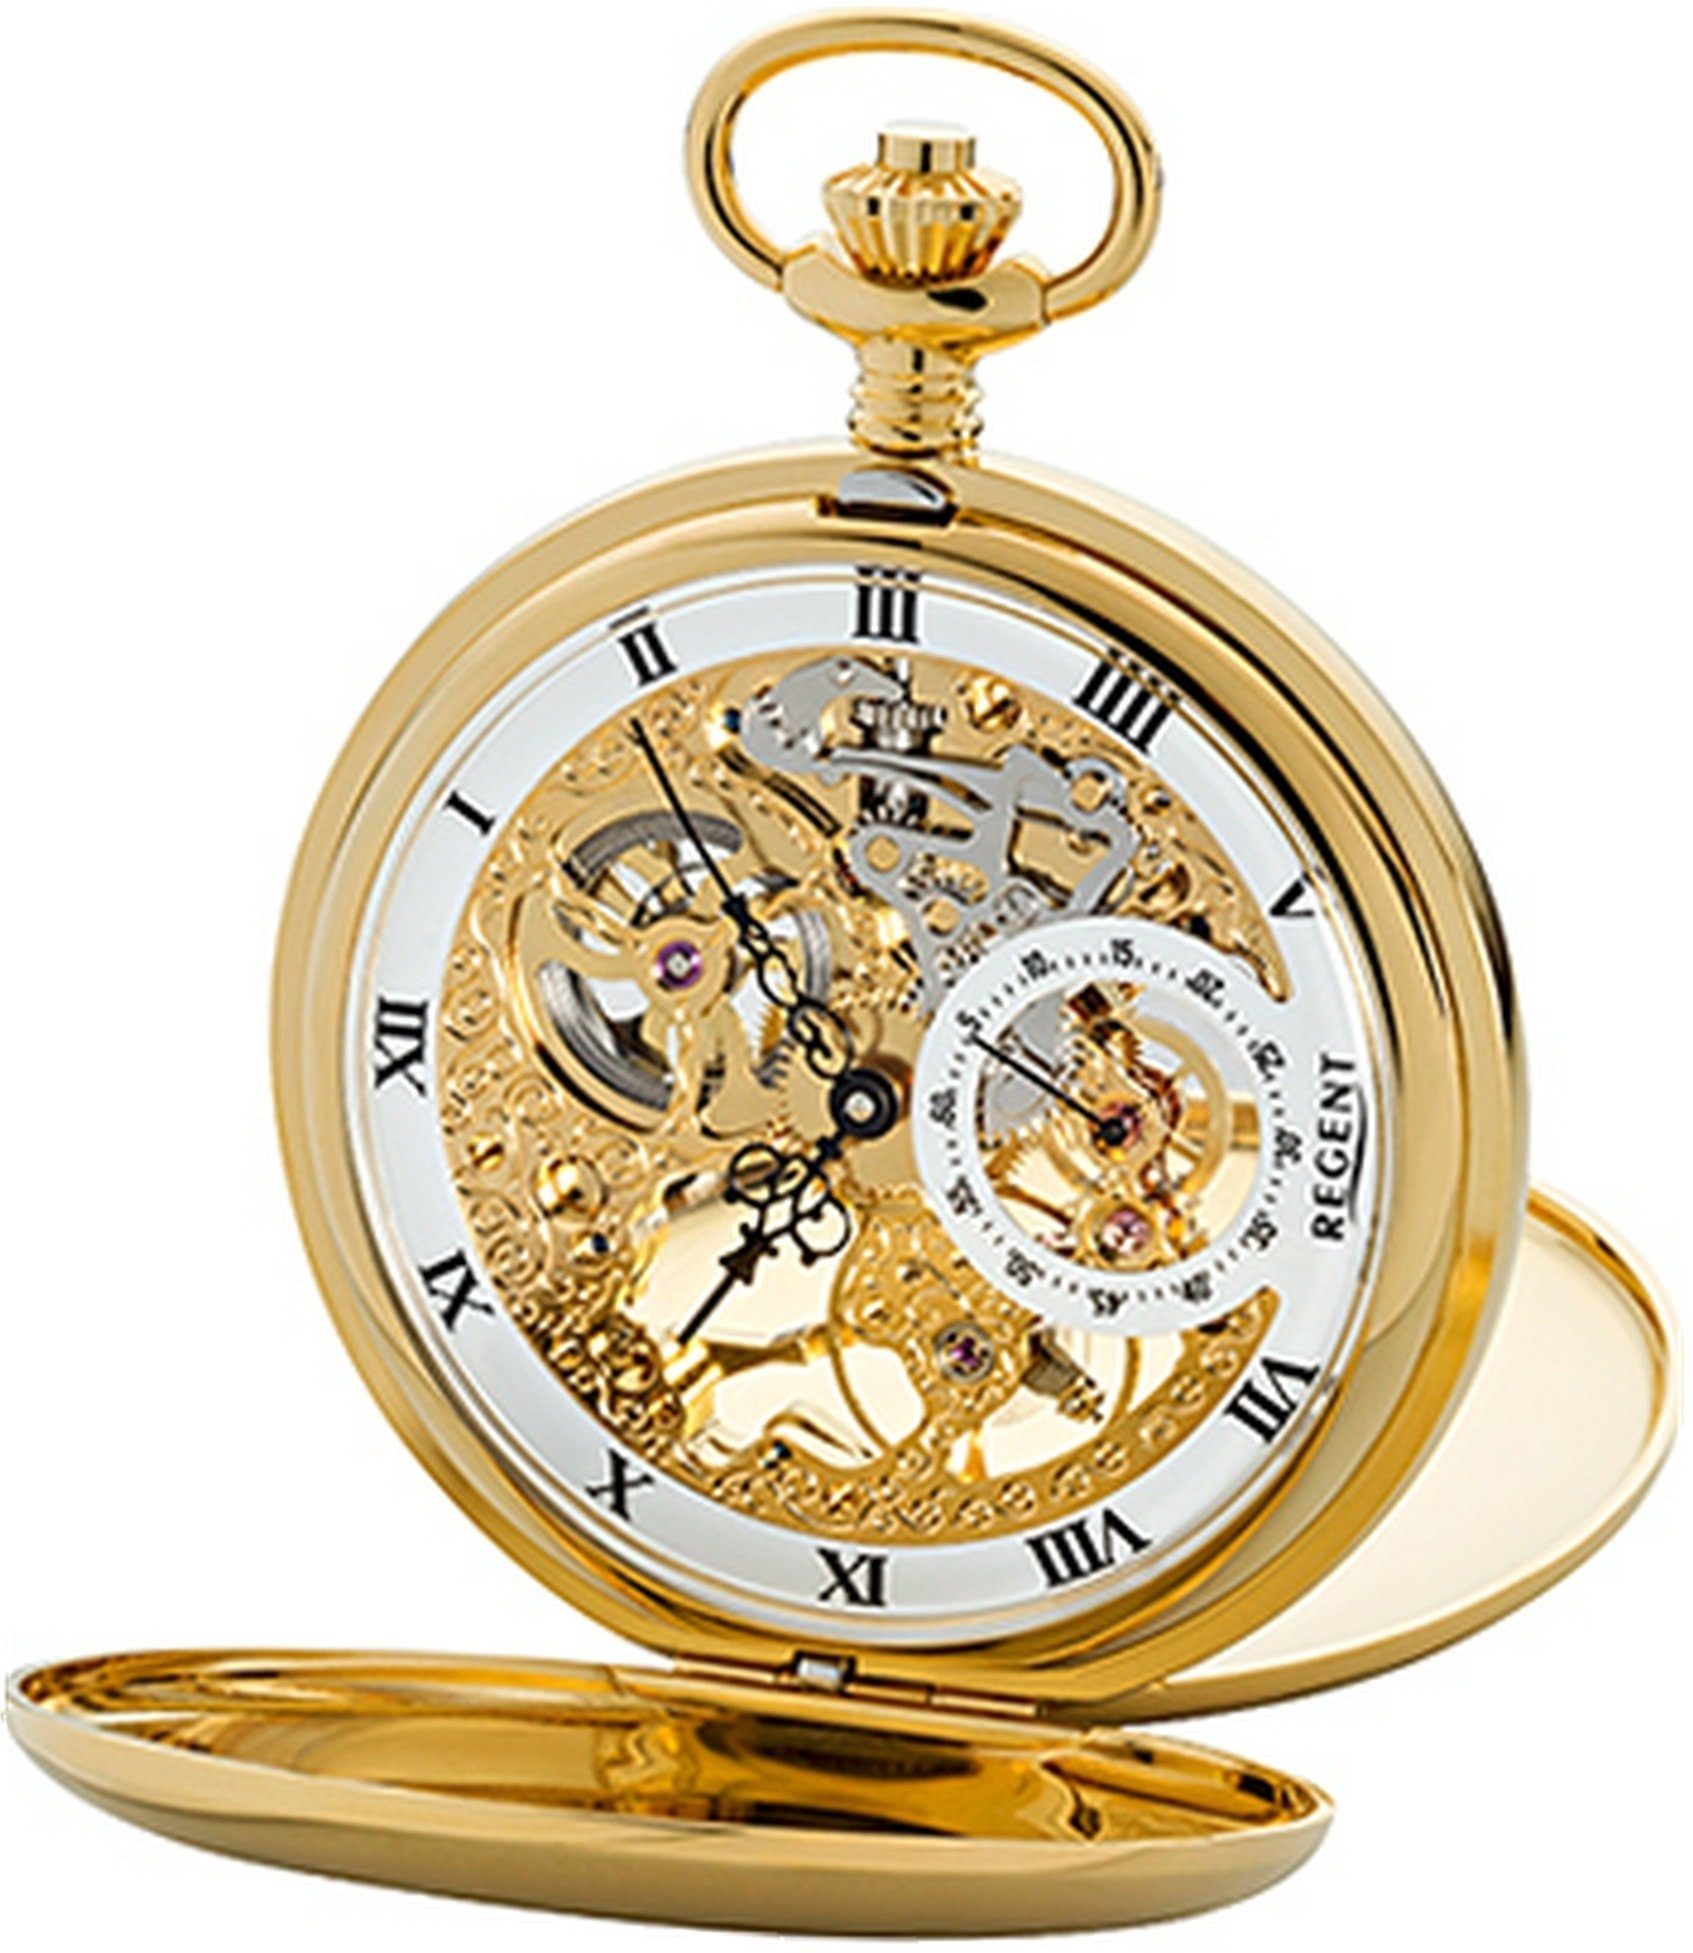 Regent Taschenuhr Regent Herren Uhr GM1612 Armbanduhr, (Analog, Analoguhr), Herrenuhr, rundes Gehäuse, groß (ca. 53mm), weiß